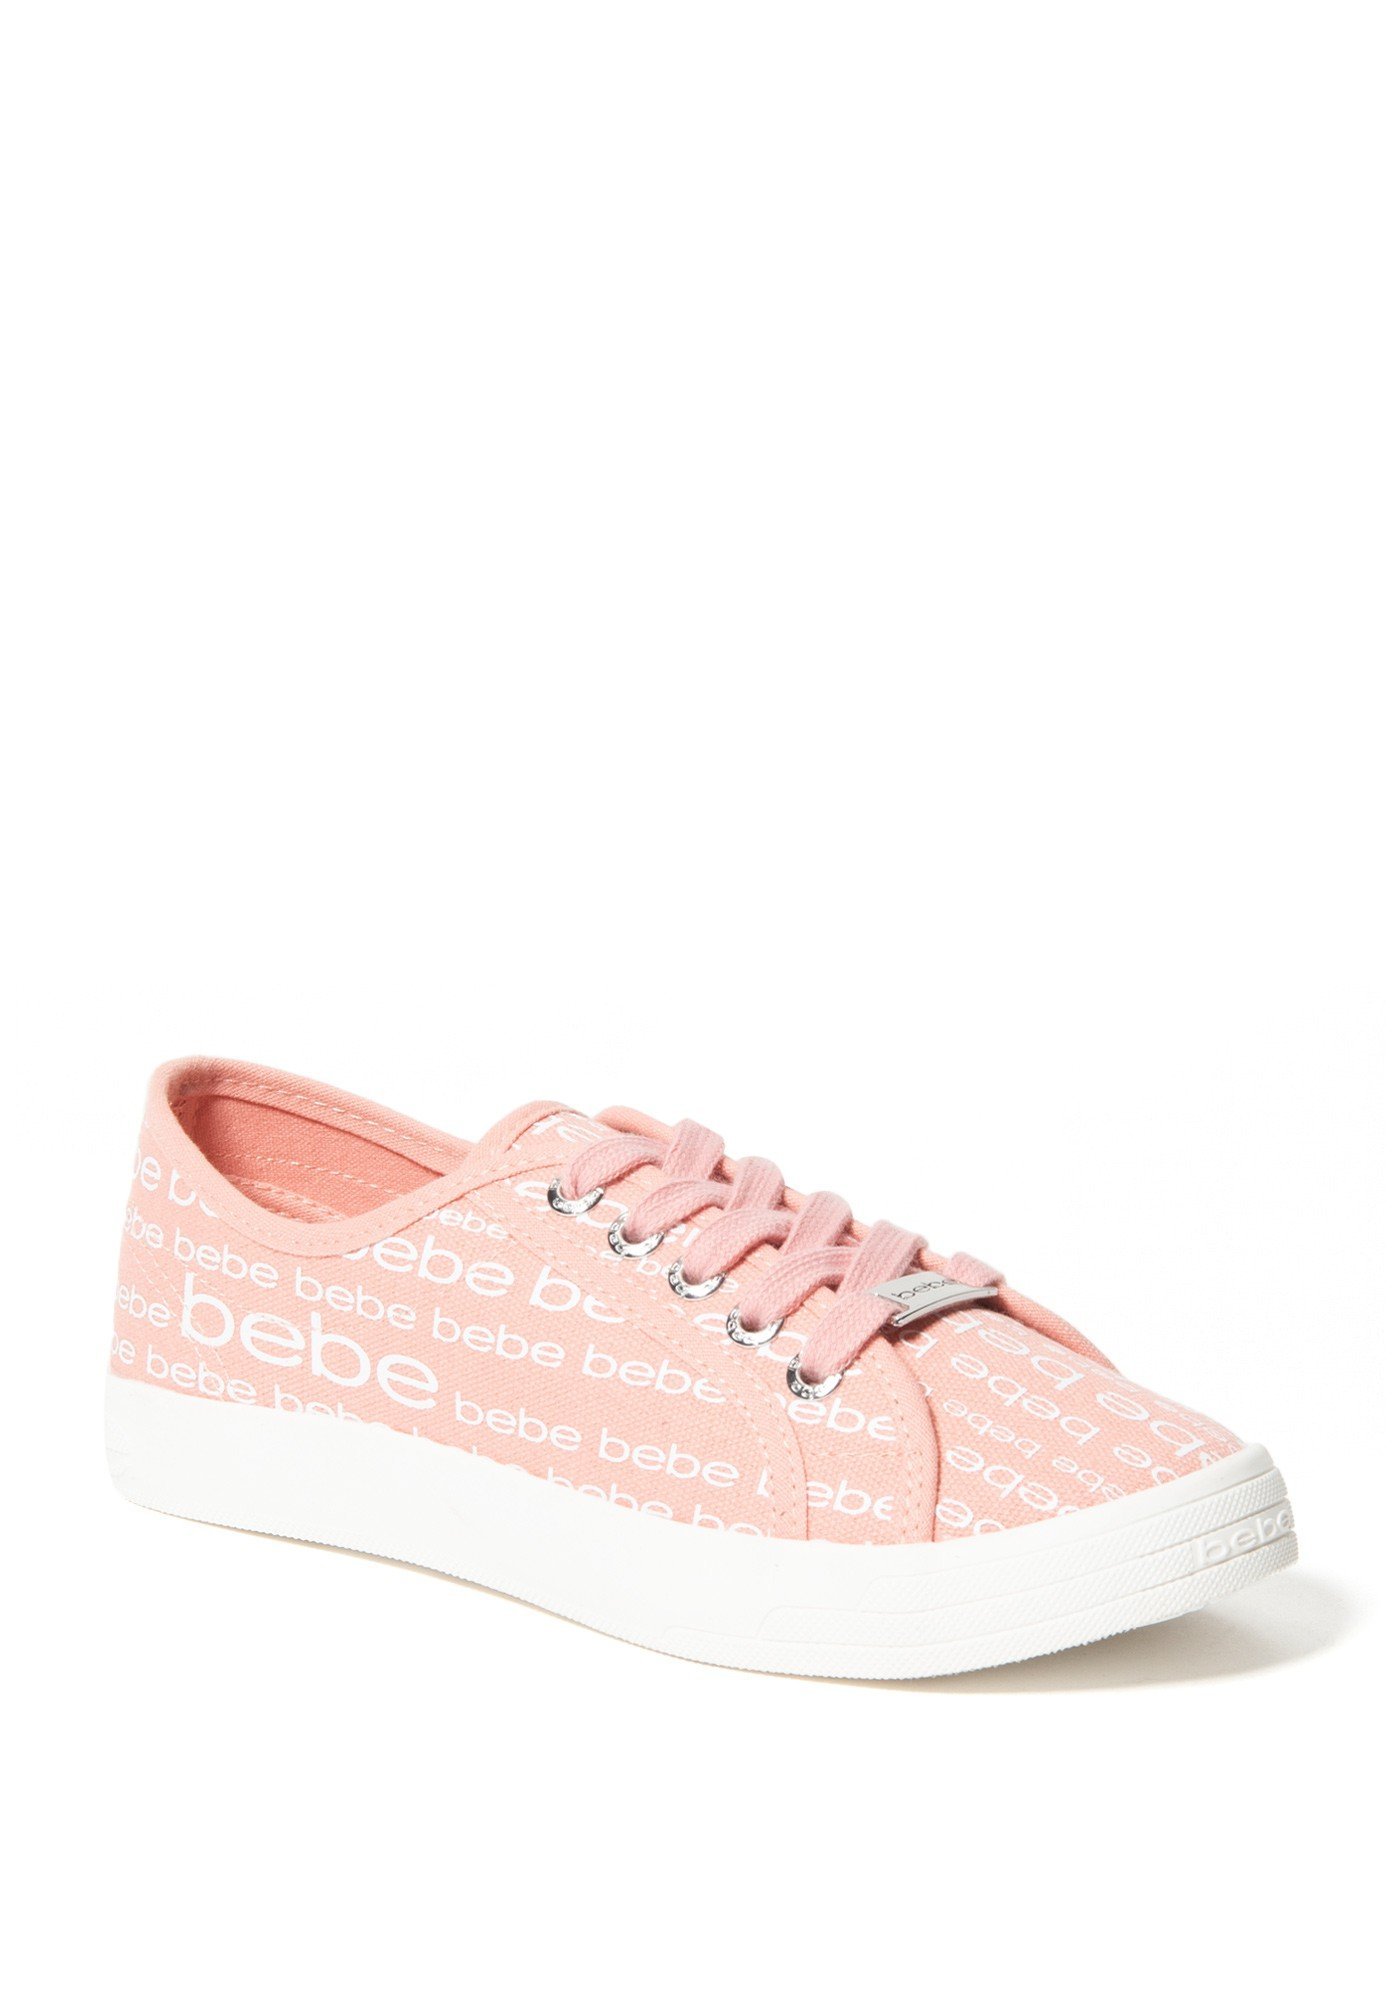 Bebe Women's Daylin Logo Sneakers, Size 7 in Pink Synthetic